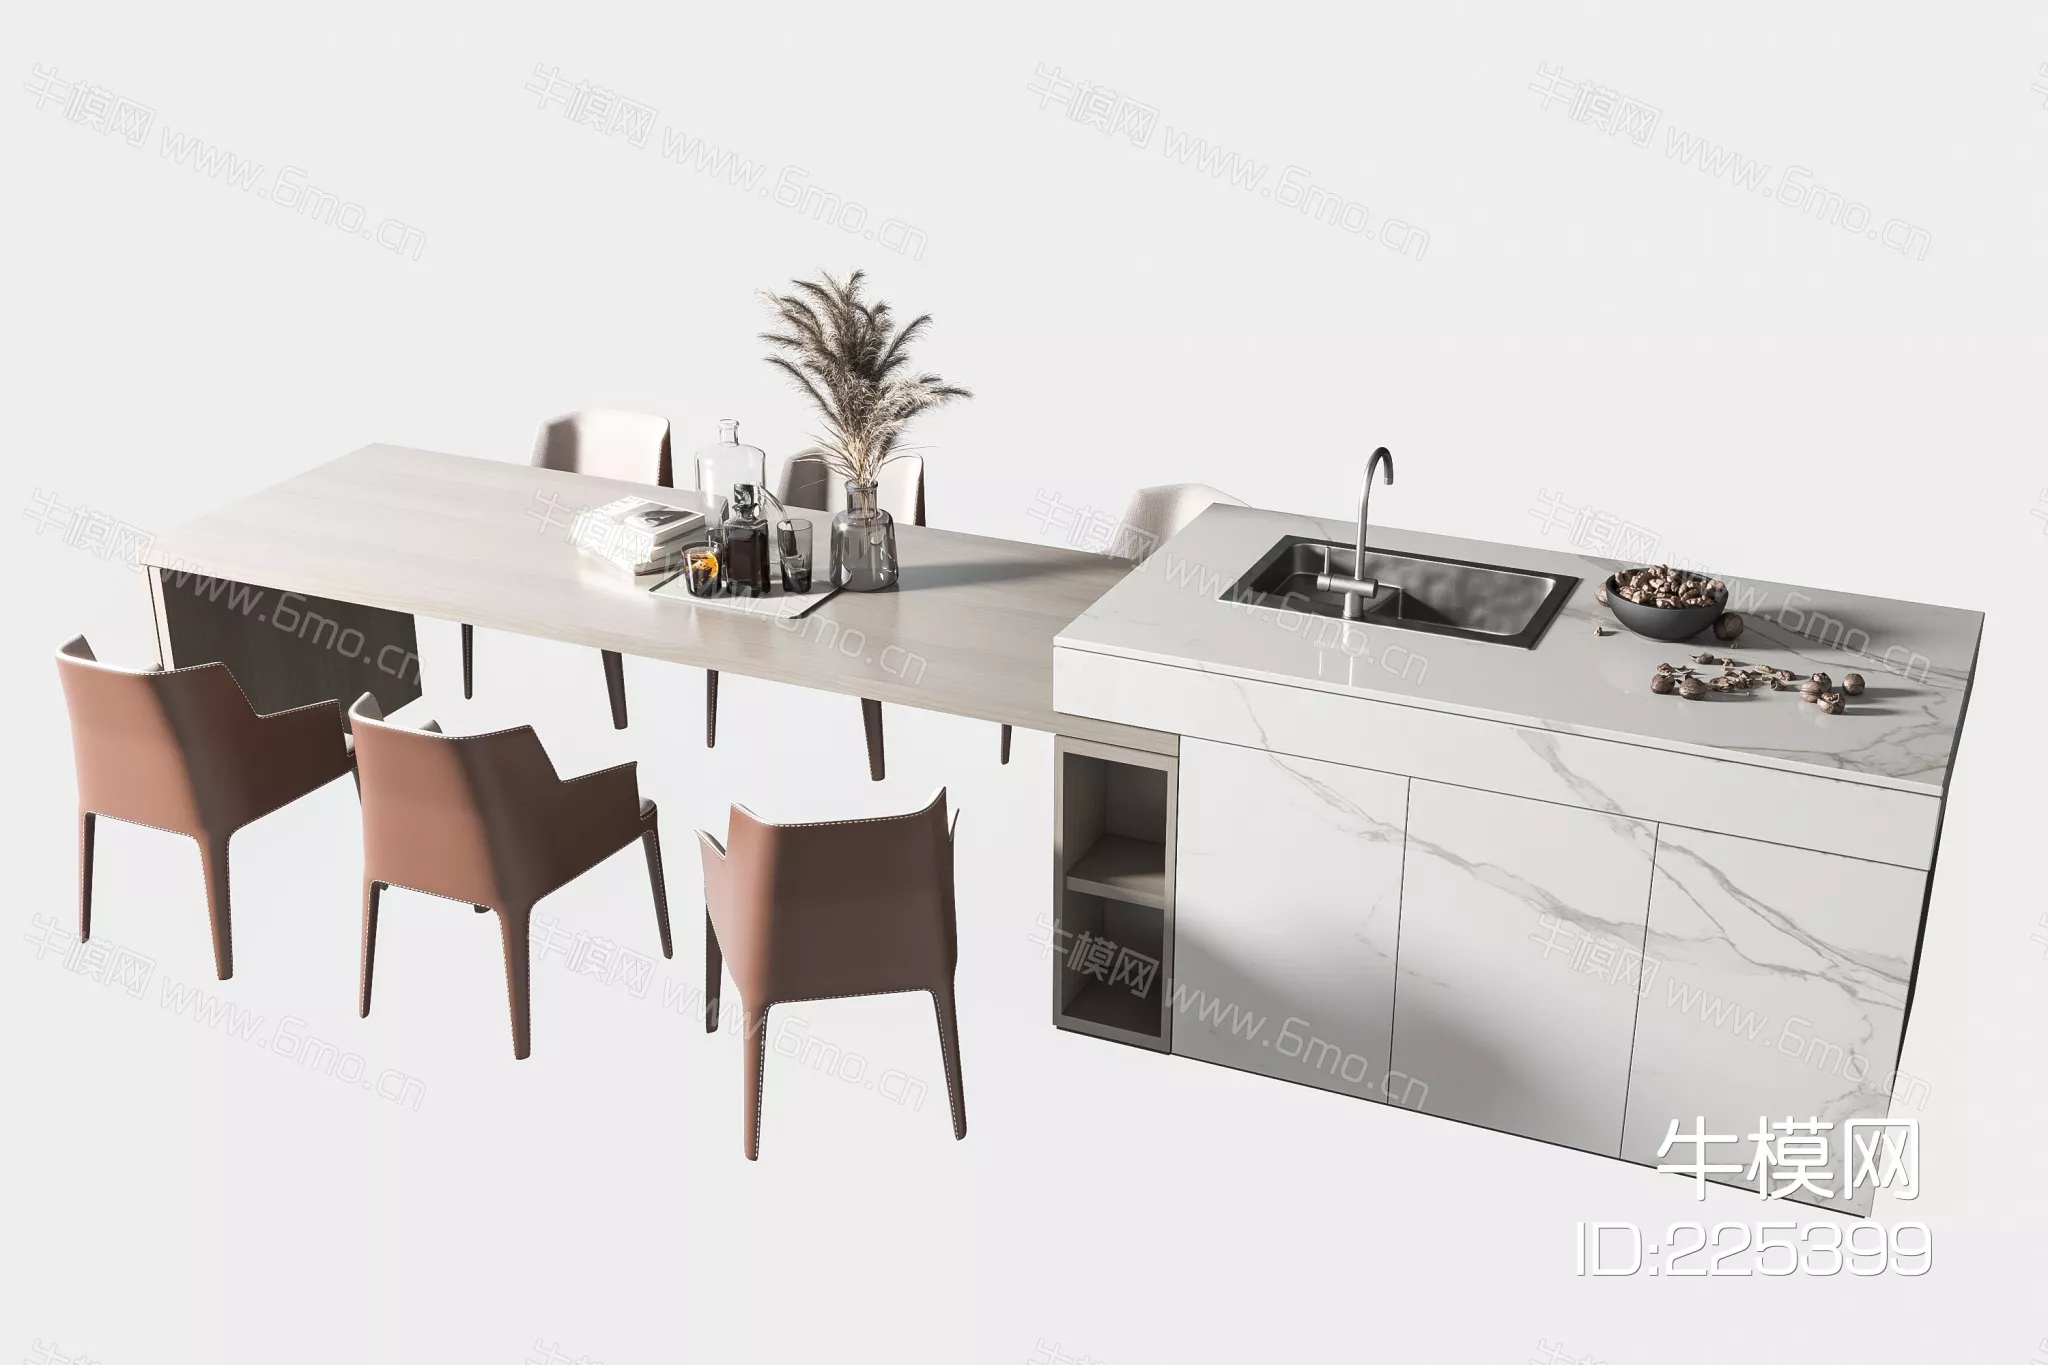 MODERN DINING TABLE SET - SKETCHUP 3D MODEL - ENSCAPE - 225399